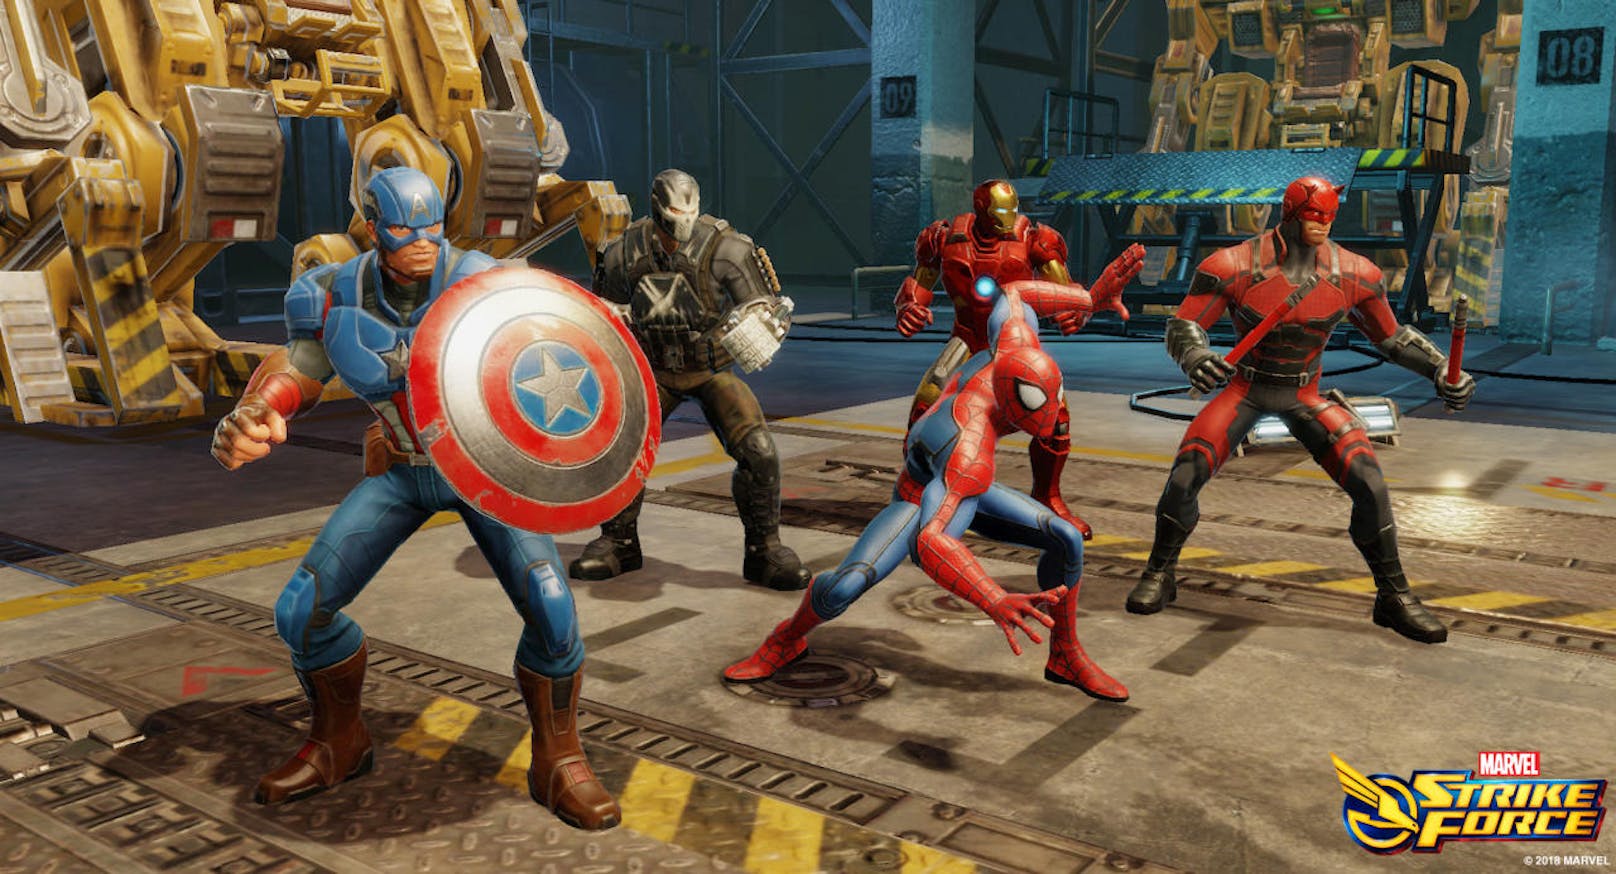 <b>31. März 2018:</b> FoxNext Games hat MARVEL Strike Force ins Leben gerufen, ein kostenloses Squad-basiertes RPG im Marvel-Universum, das auf der ganzen Welt bereits zunehmend Fans gewinnt. In MARVEL Strike Force schließen sich Spieler mit S.H.I.E.L.D. Direktor Nick Fury zusammen, um ein Team legendärer Marvel-Charaktere zusammenstellen, darunter Iron Man, Captain America, Wolverine, Black Widow, Spiderman, Venom, Star-Lord, Gamora, Daredevil, Doctor Strange und viele mehr. Beim Start können die Spieler aus mehr als 70 beliebten Charakteren wählen, mächtige Allianzen bilden und neue Ausrüstung sowie Upgrades sammeln, um ihre Teams stärker zu machen und die Feinde von S.H.I.E.L.D. im strategischen Kampf zu besiegen.